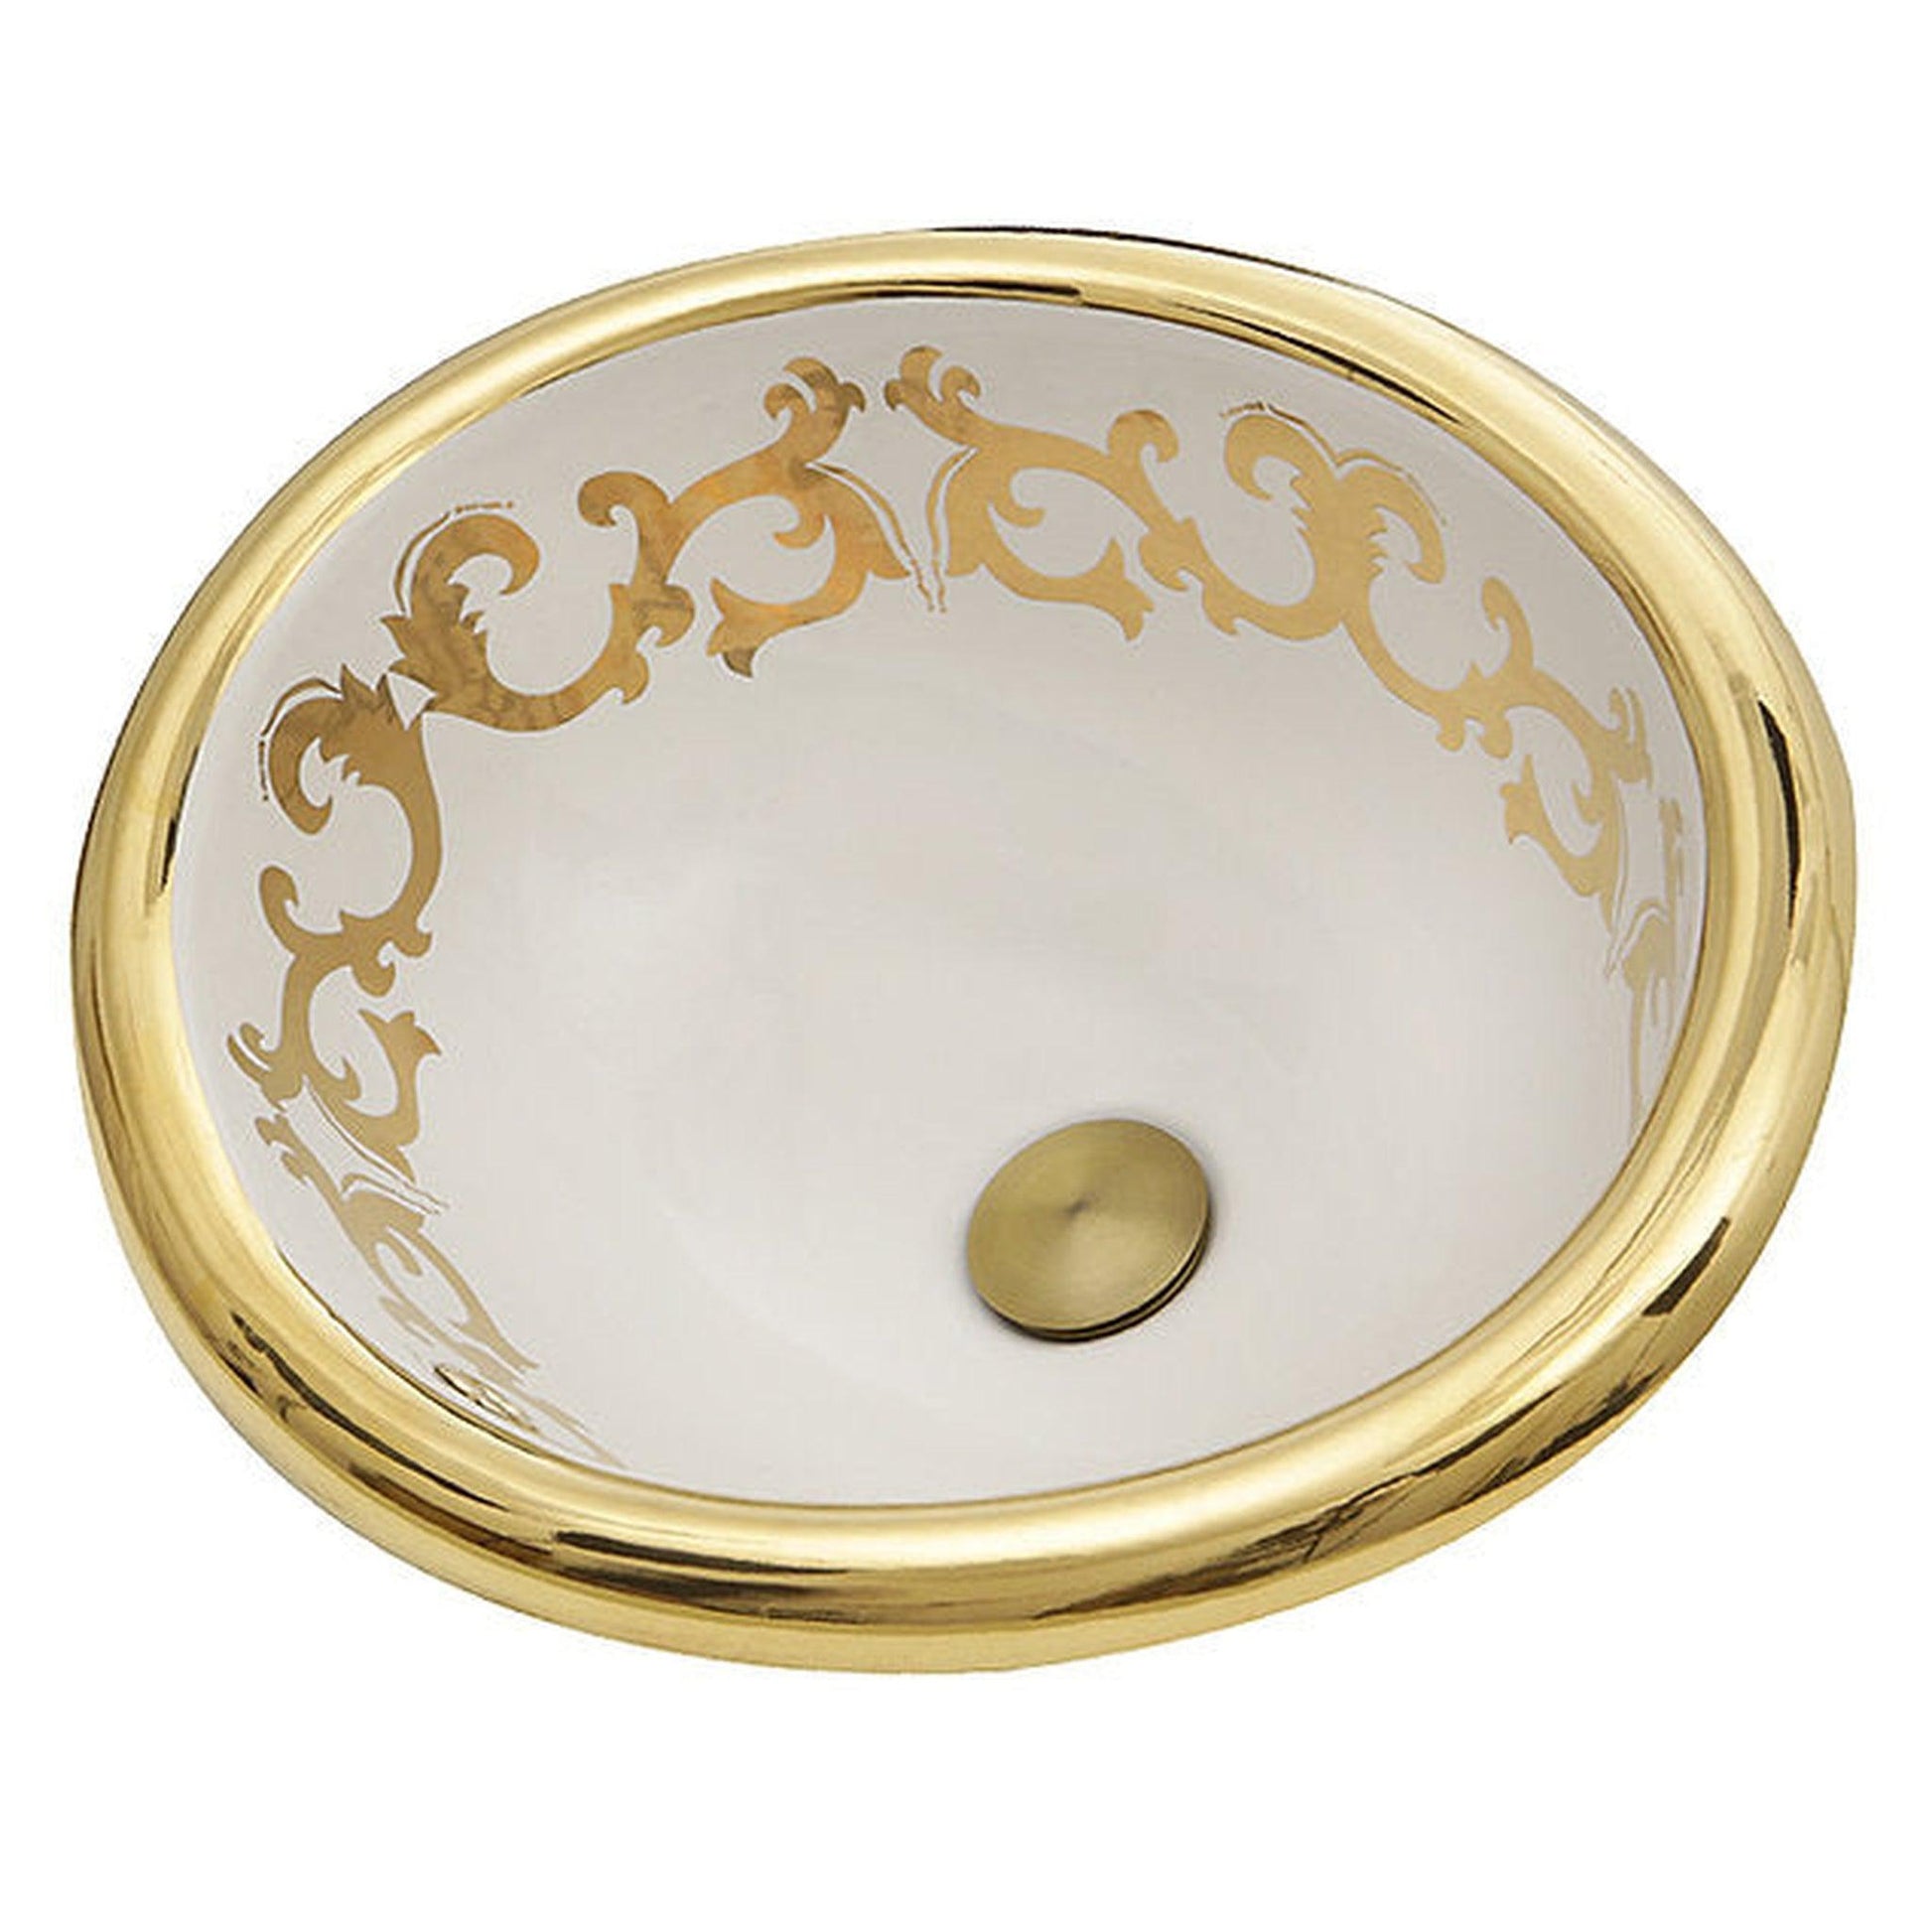 Nantucket Sinks Regatta 20" W x 16 D" San Remo Italian Fireclay Oval Glazed White Gold Drop-In Vanity Sink With Overflow